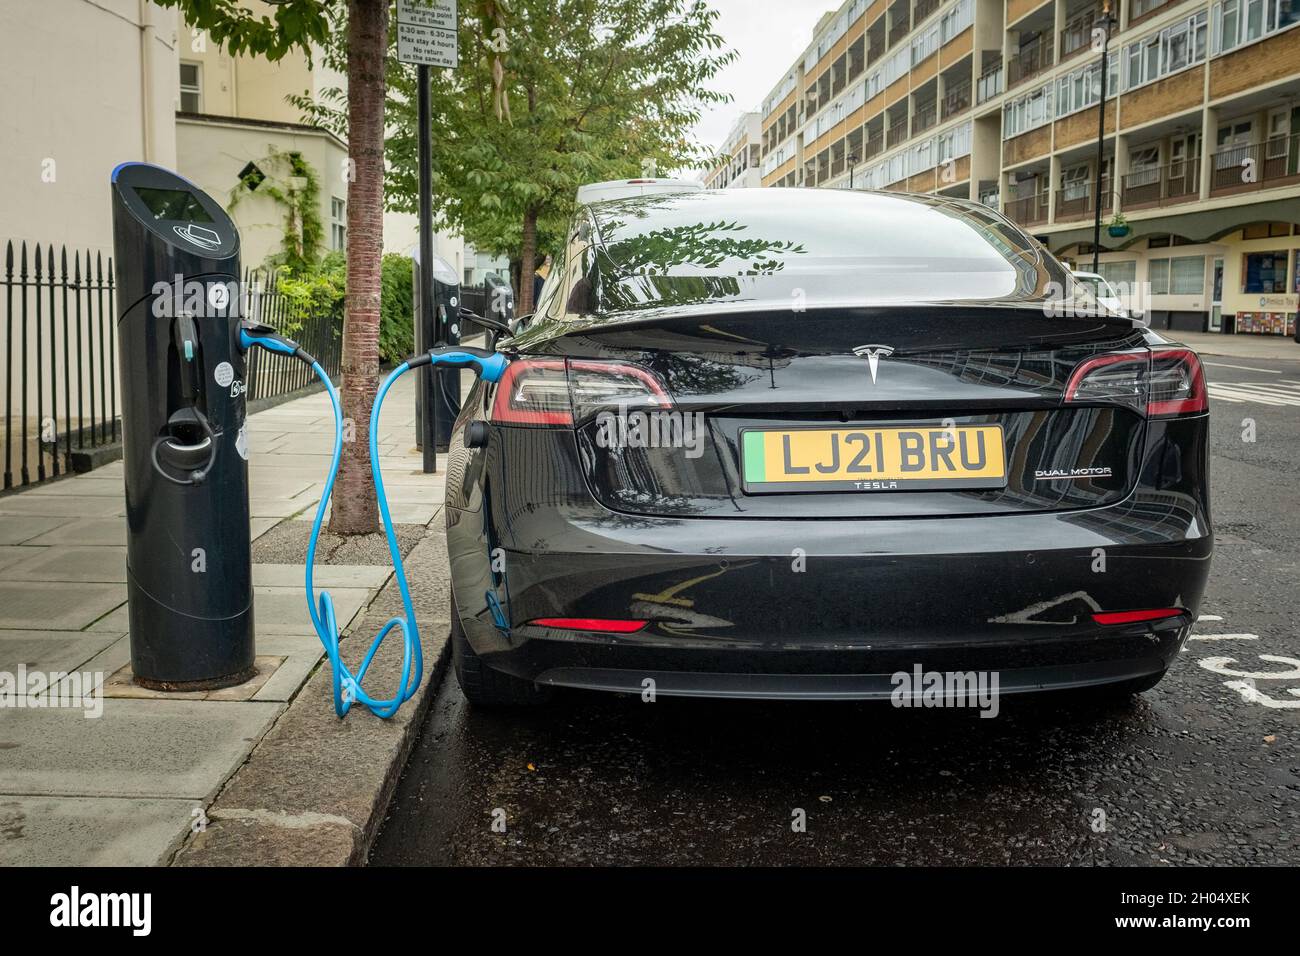 Londra - Ottobre 2021: Auto elettrica Tesla a pagamento presso la stazione di ricarica su strada nella zona sud-occidentale di Londra Foto Stock